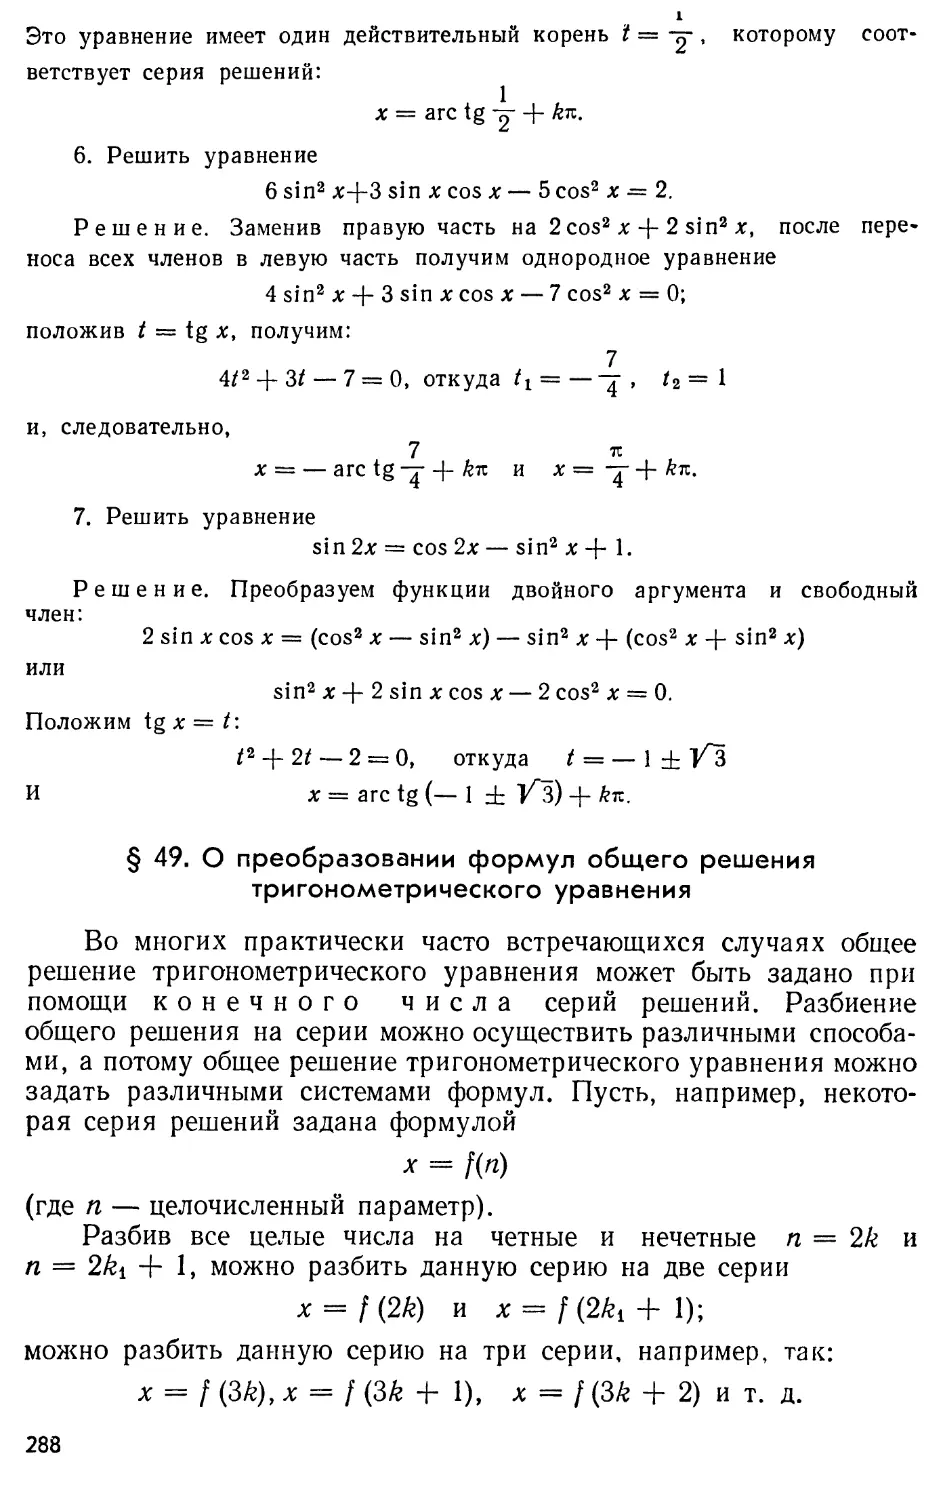 § 49. О преобразовании формул общего решения тригонометрического уравнения